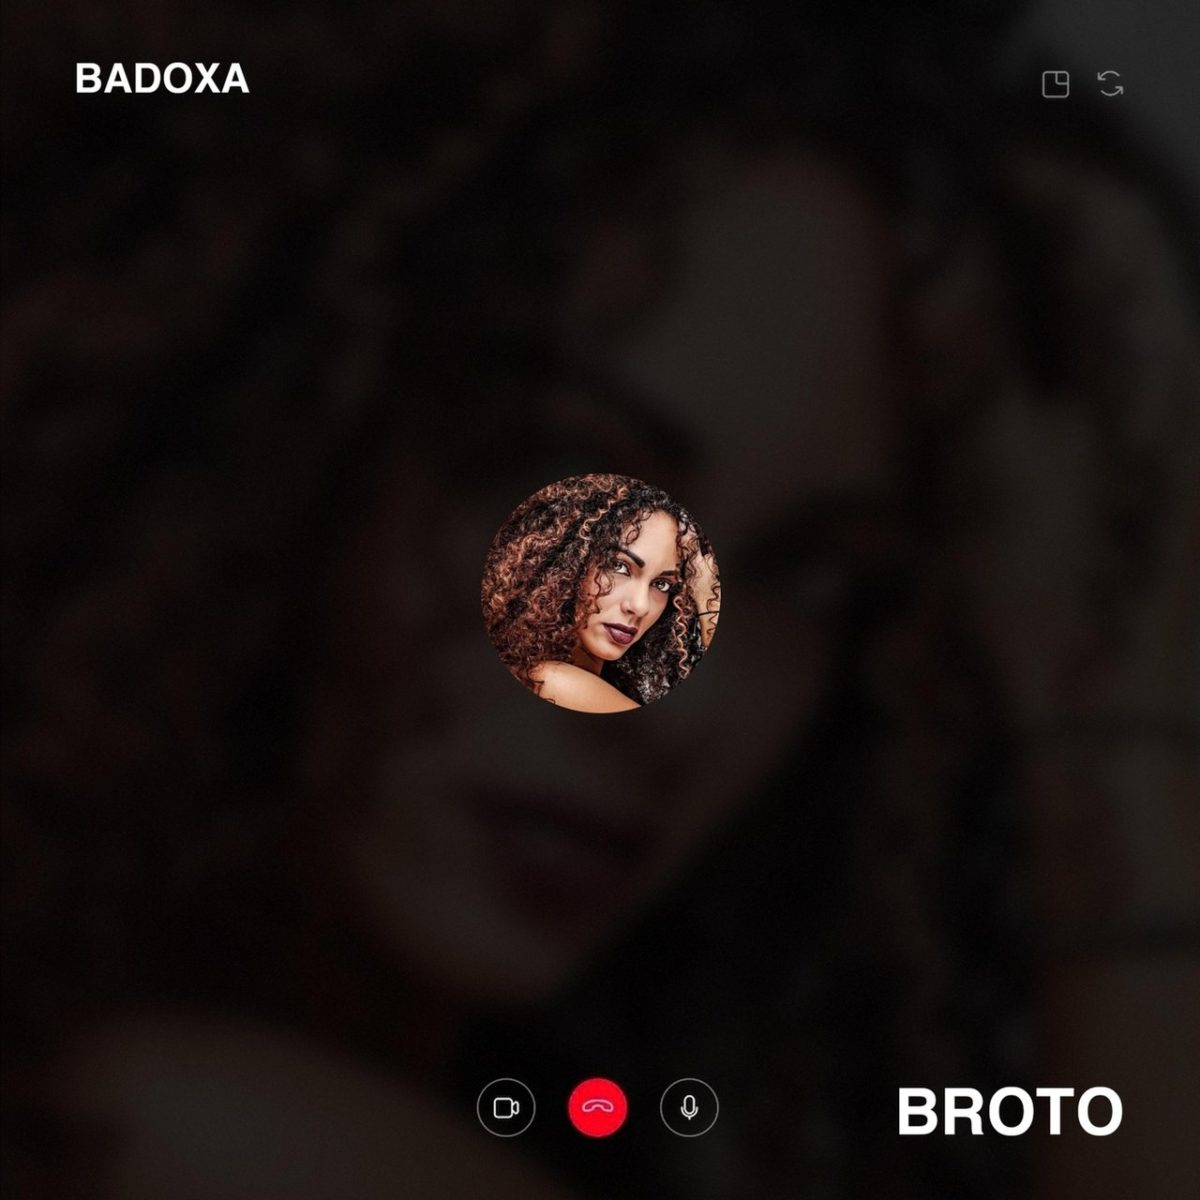 Badoxa - Broto (Cover)